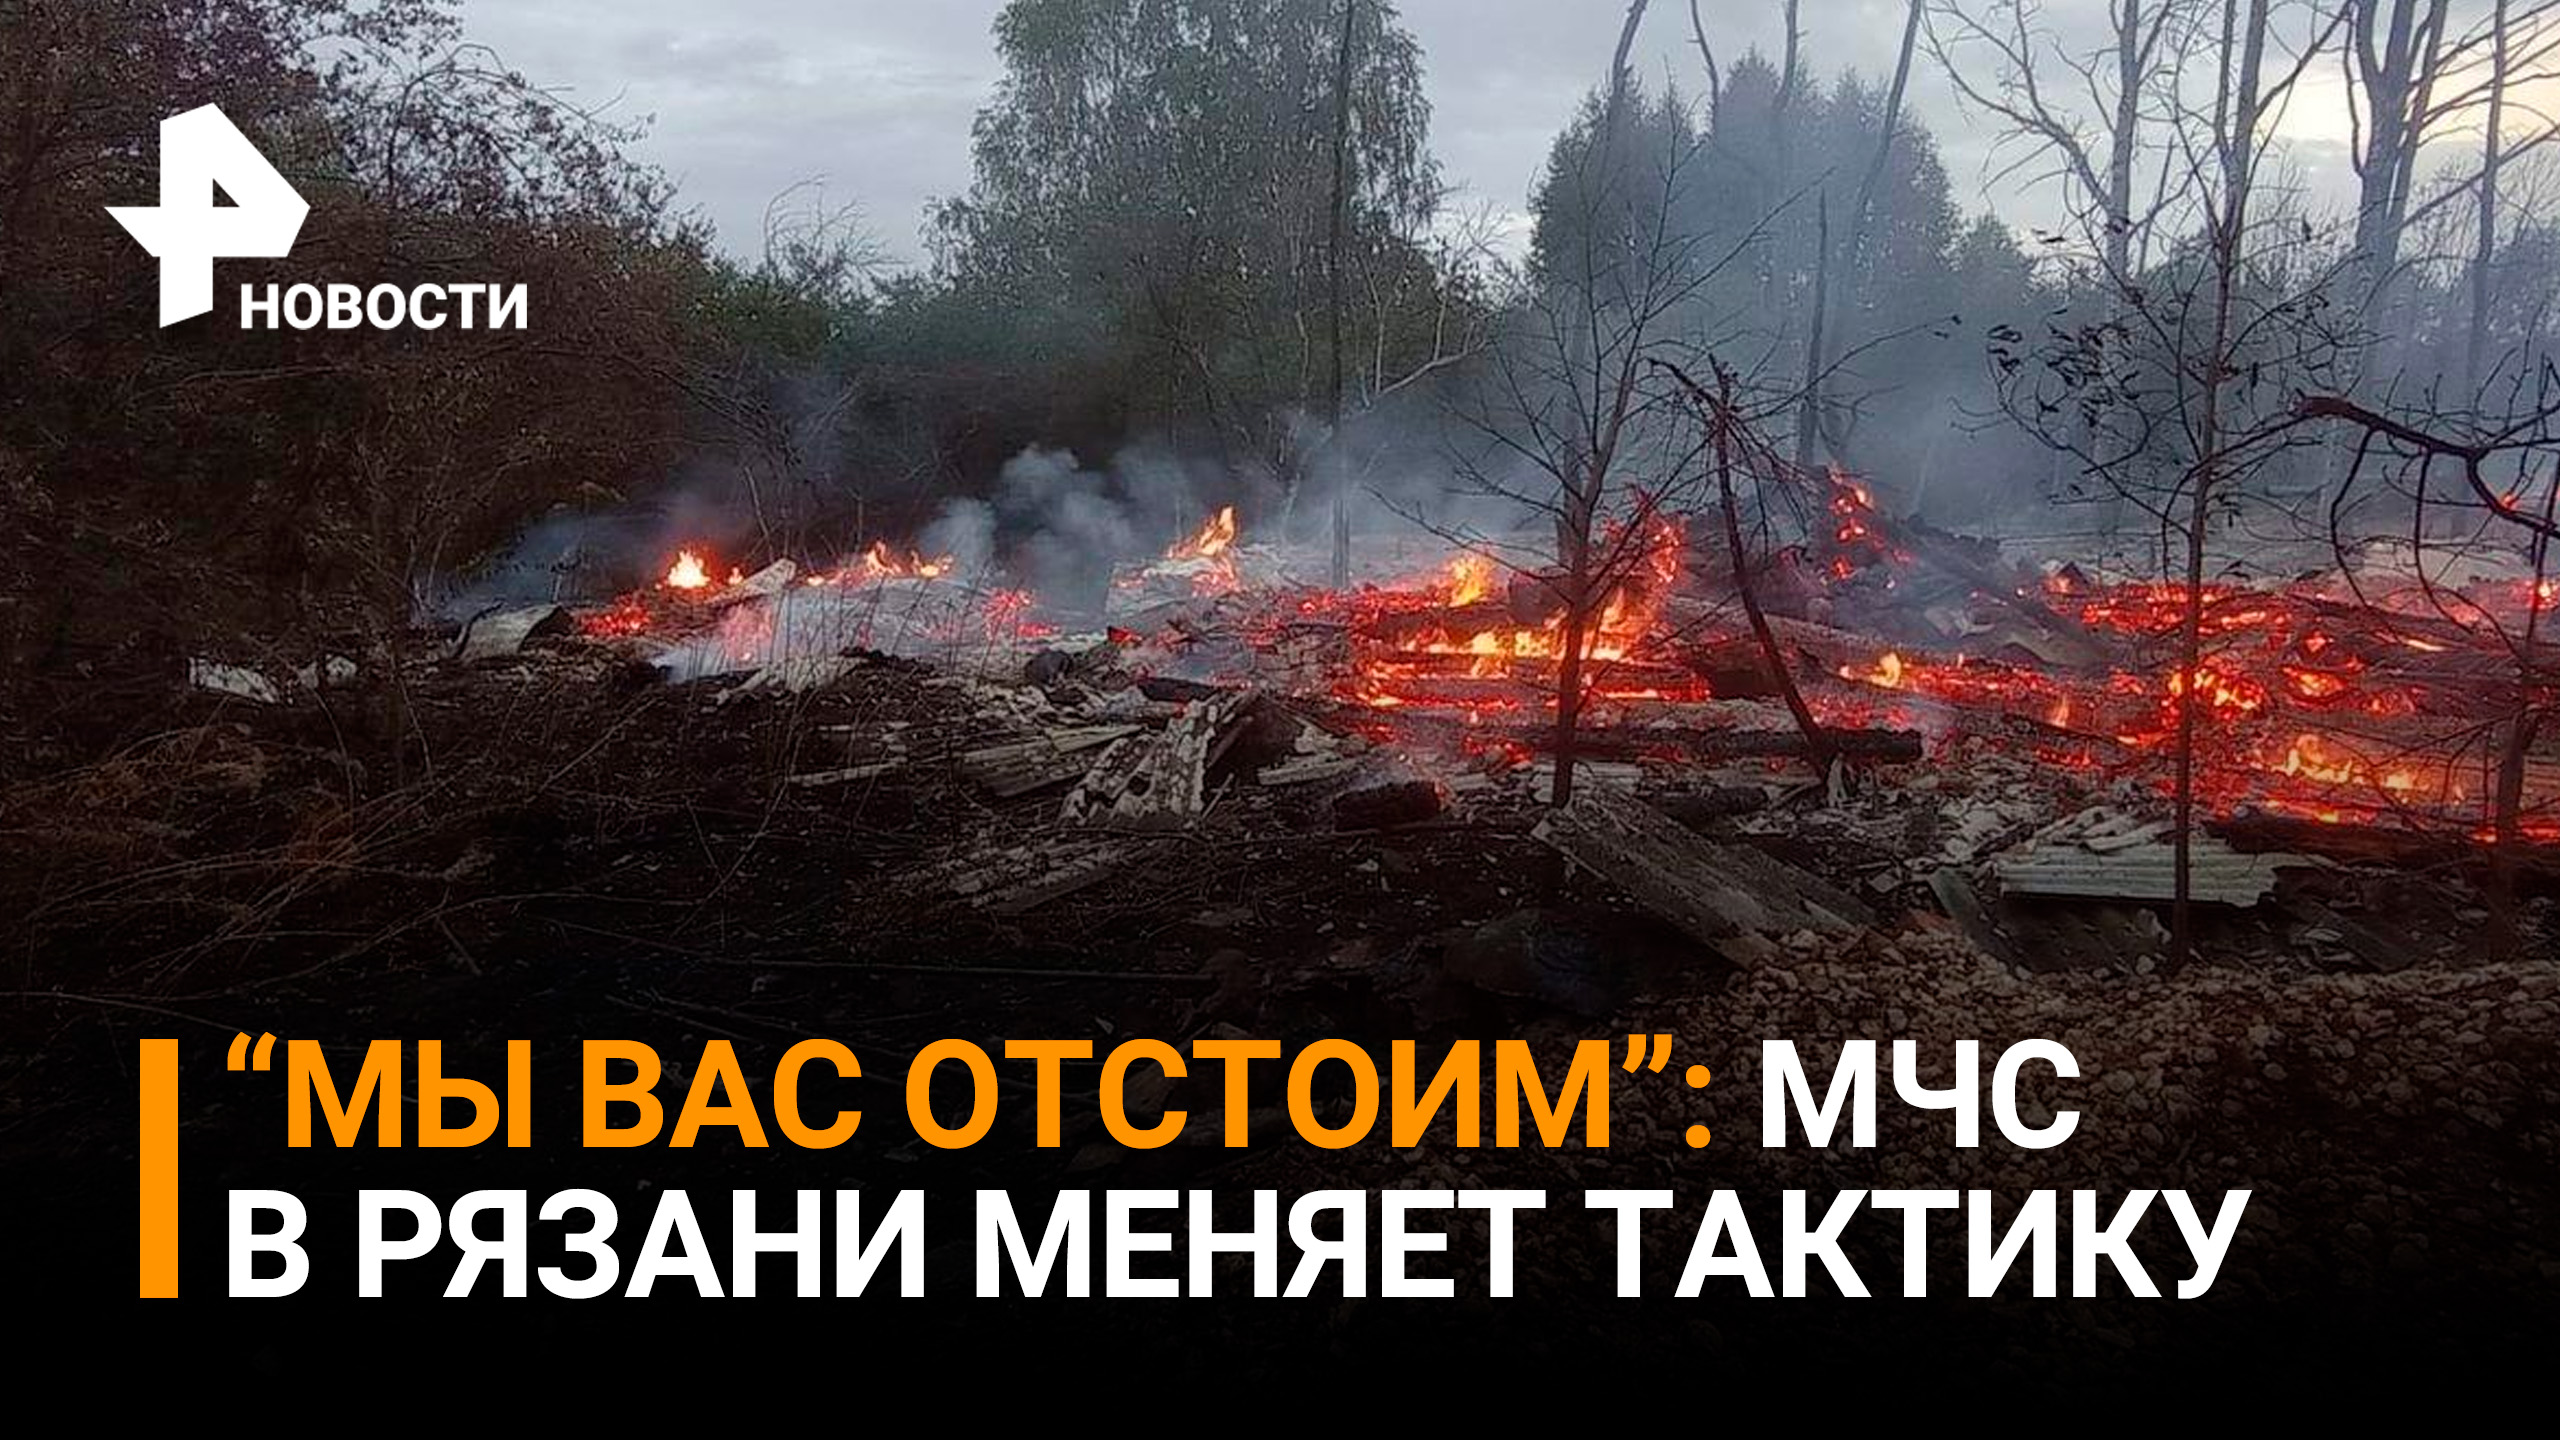 "Отстоим": спасатели в Рязани меняют тактику борьбы с огнём / РЕН Новости